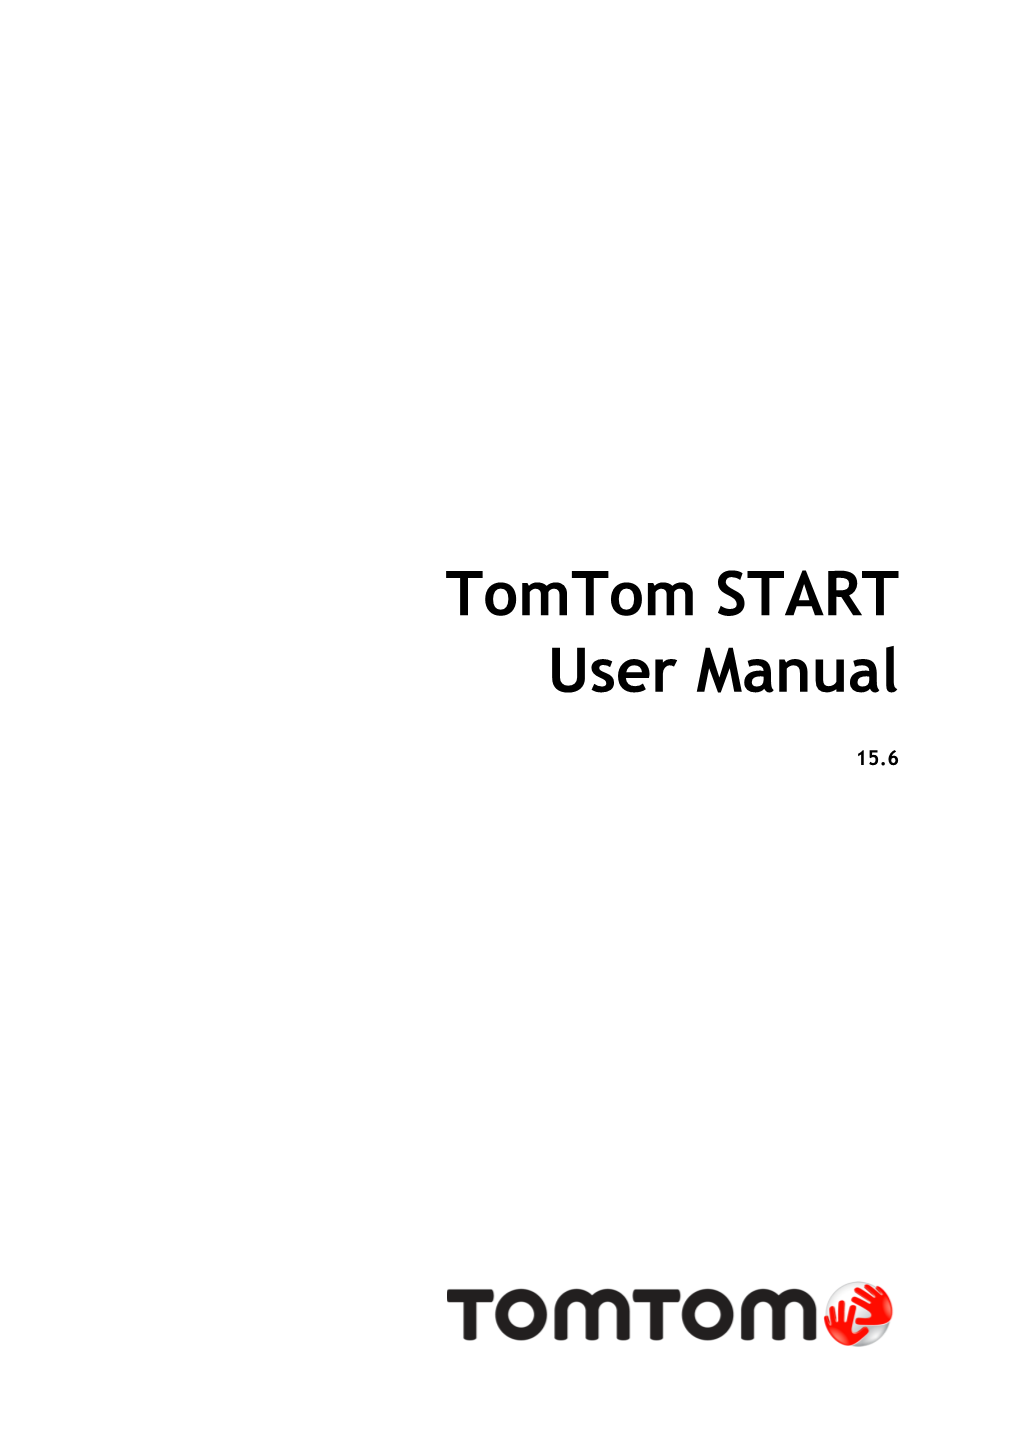 Tomtom START User Manual